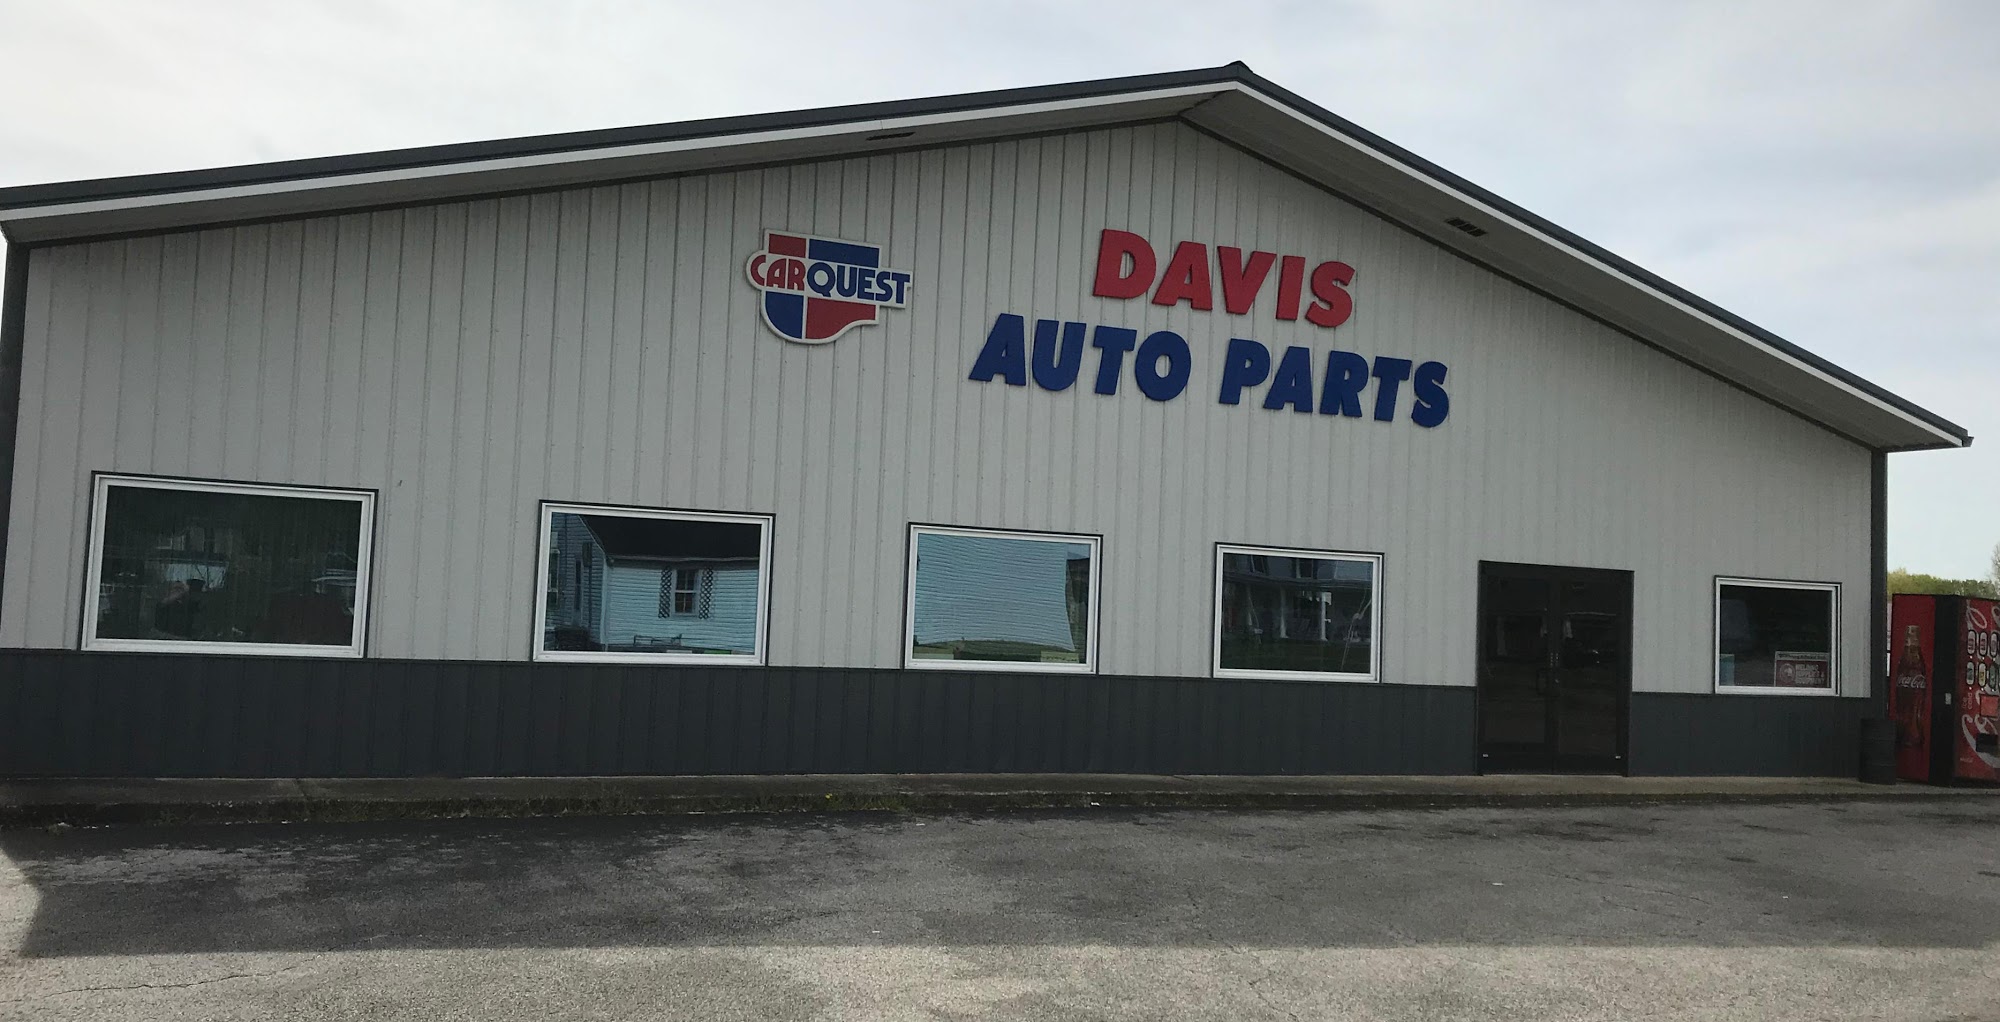 Carquest Auto Parts - DAVIS AUTO PARTS & MACHINE SHOP